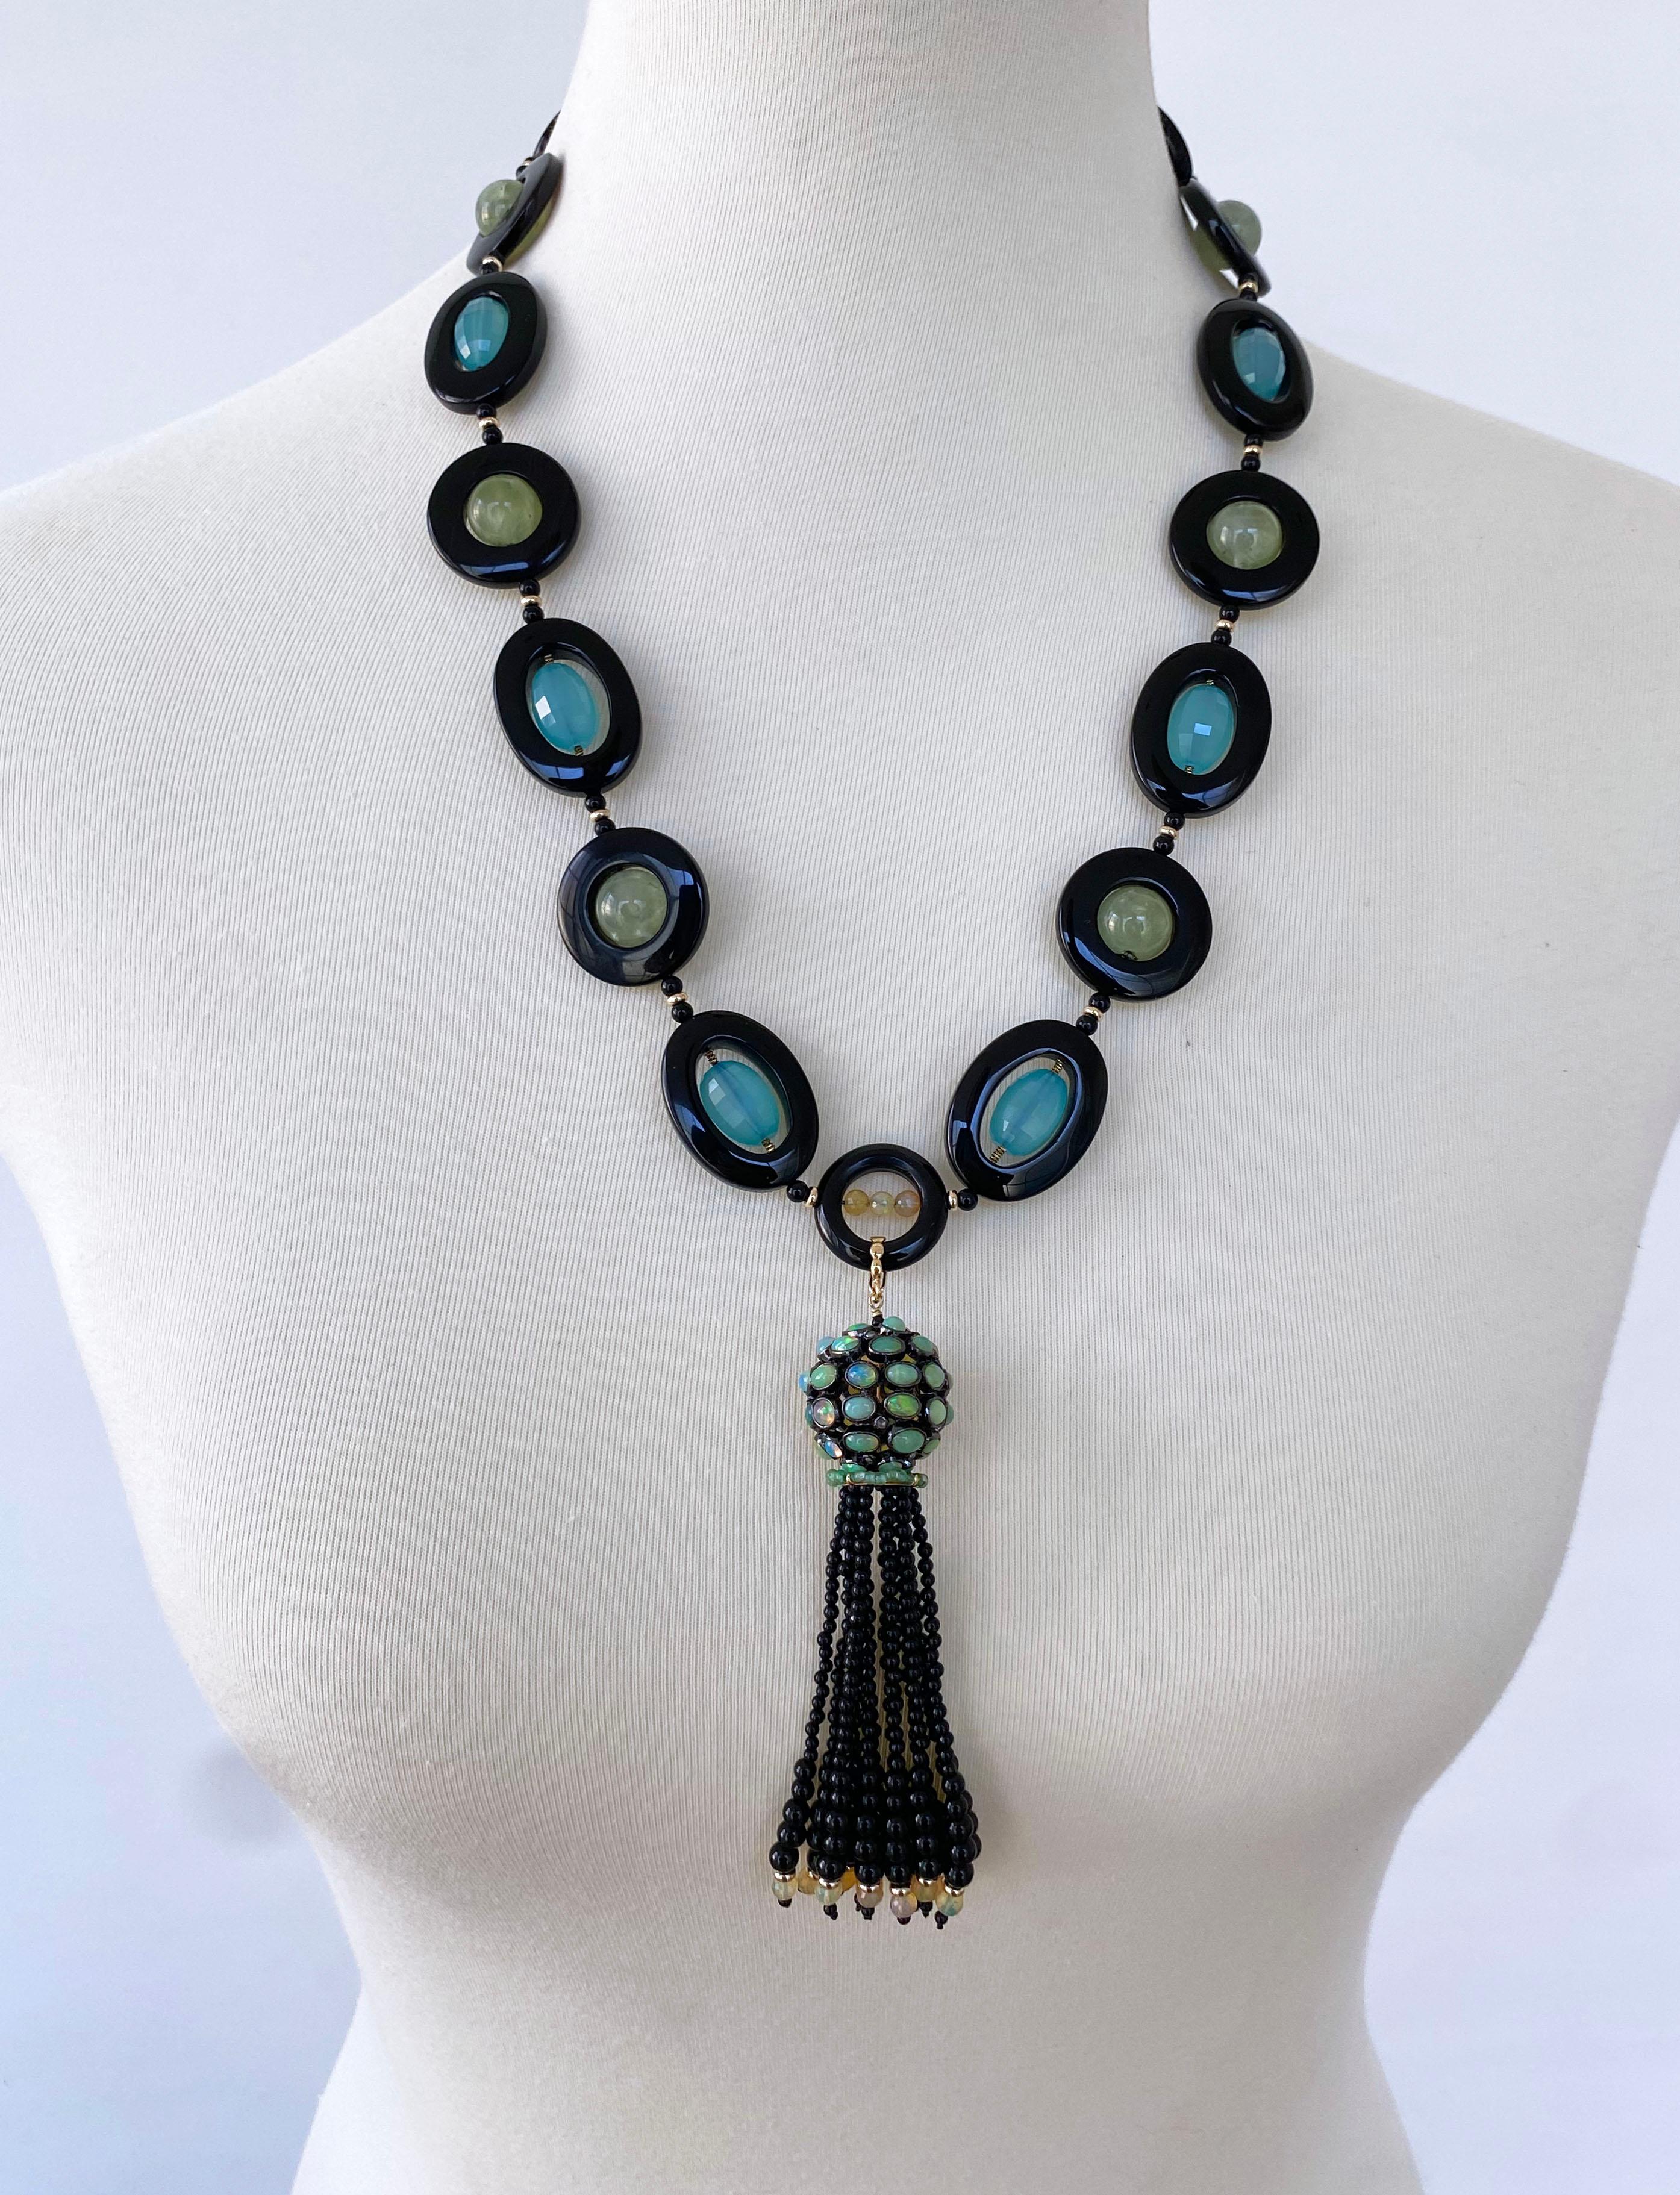 Atemberaubendes Einzelstück von Marina J.
Diese Halskette ist aus blauem Chalcedon, grünem Amethyst und schwarzem Onyx gefertigt und wird von massiven 14-karätigen Gelbgoldbeschlägen geschmückt.

Aufgrund der natürlichen Halbtransluzenz des Steins